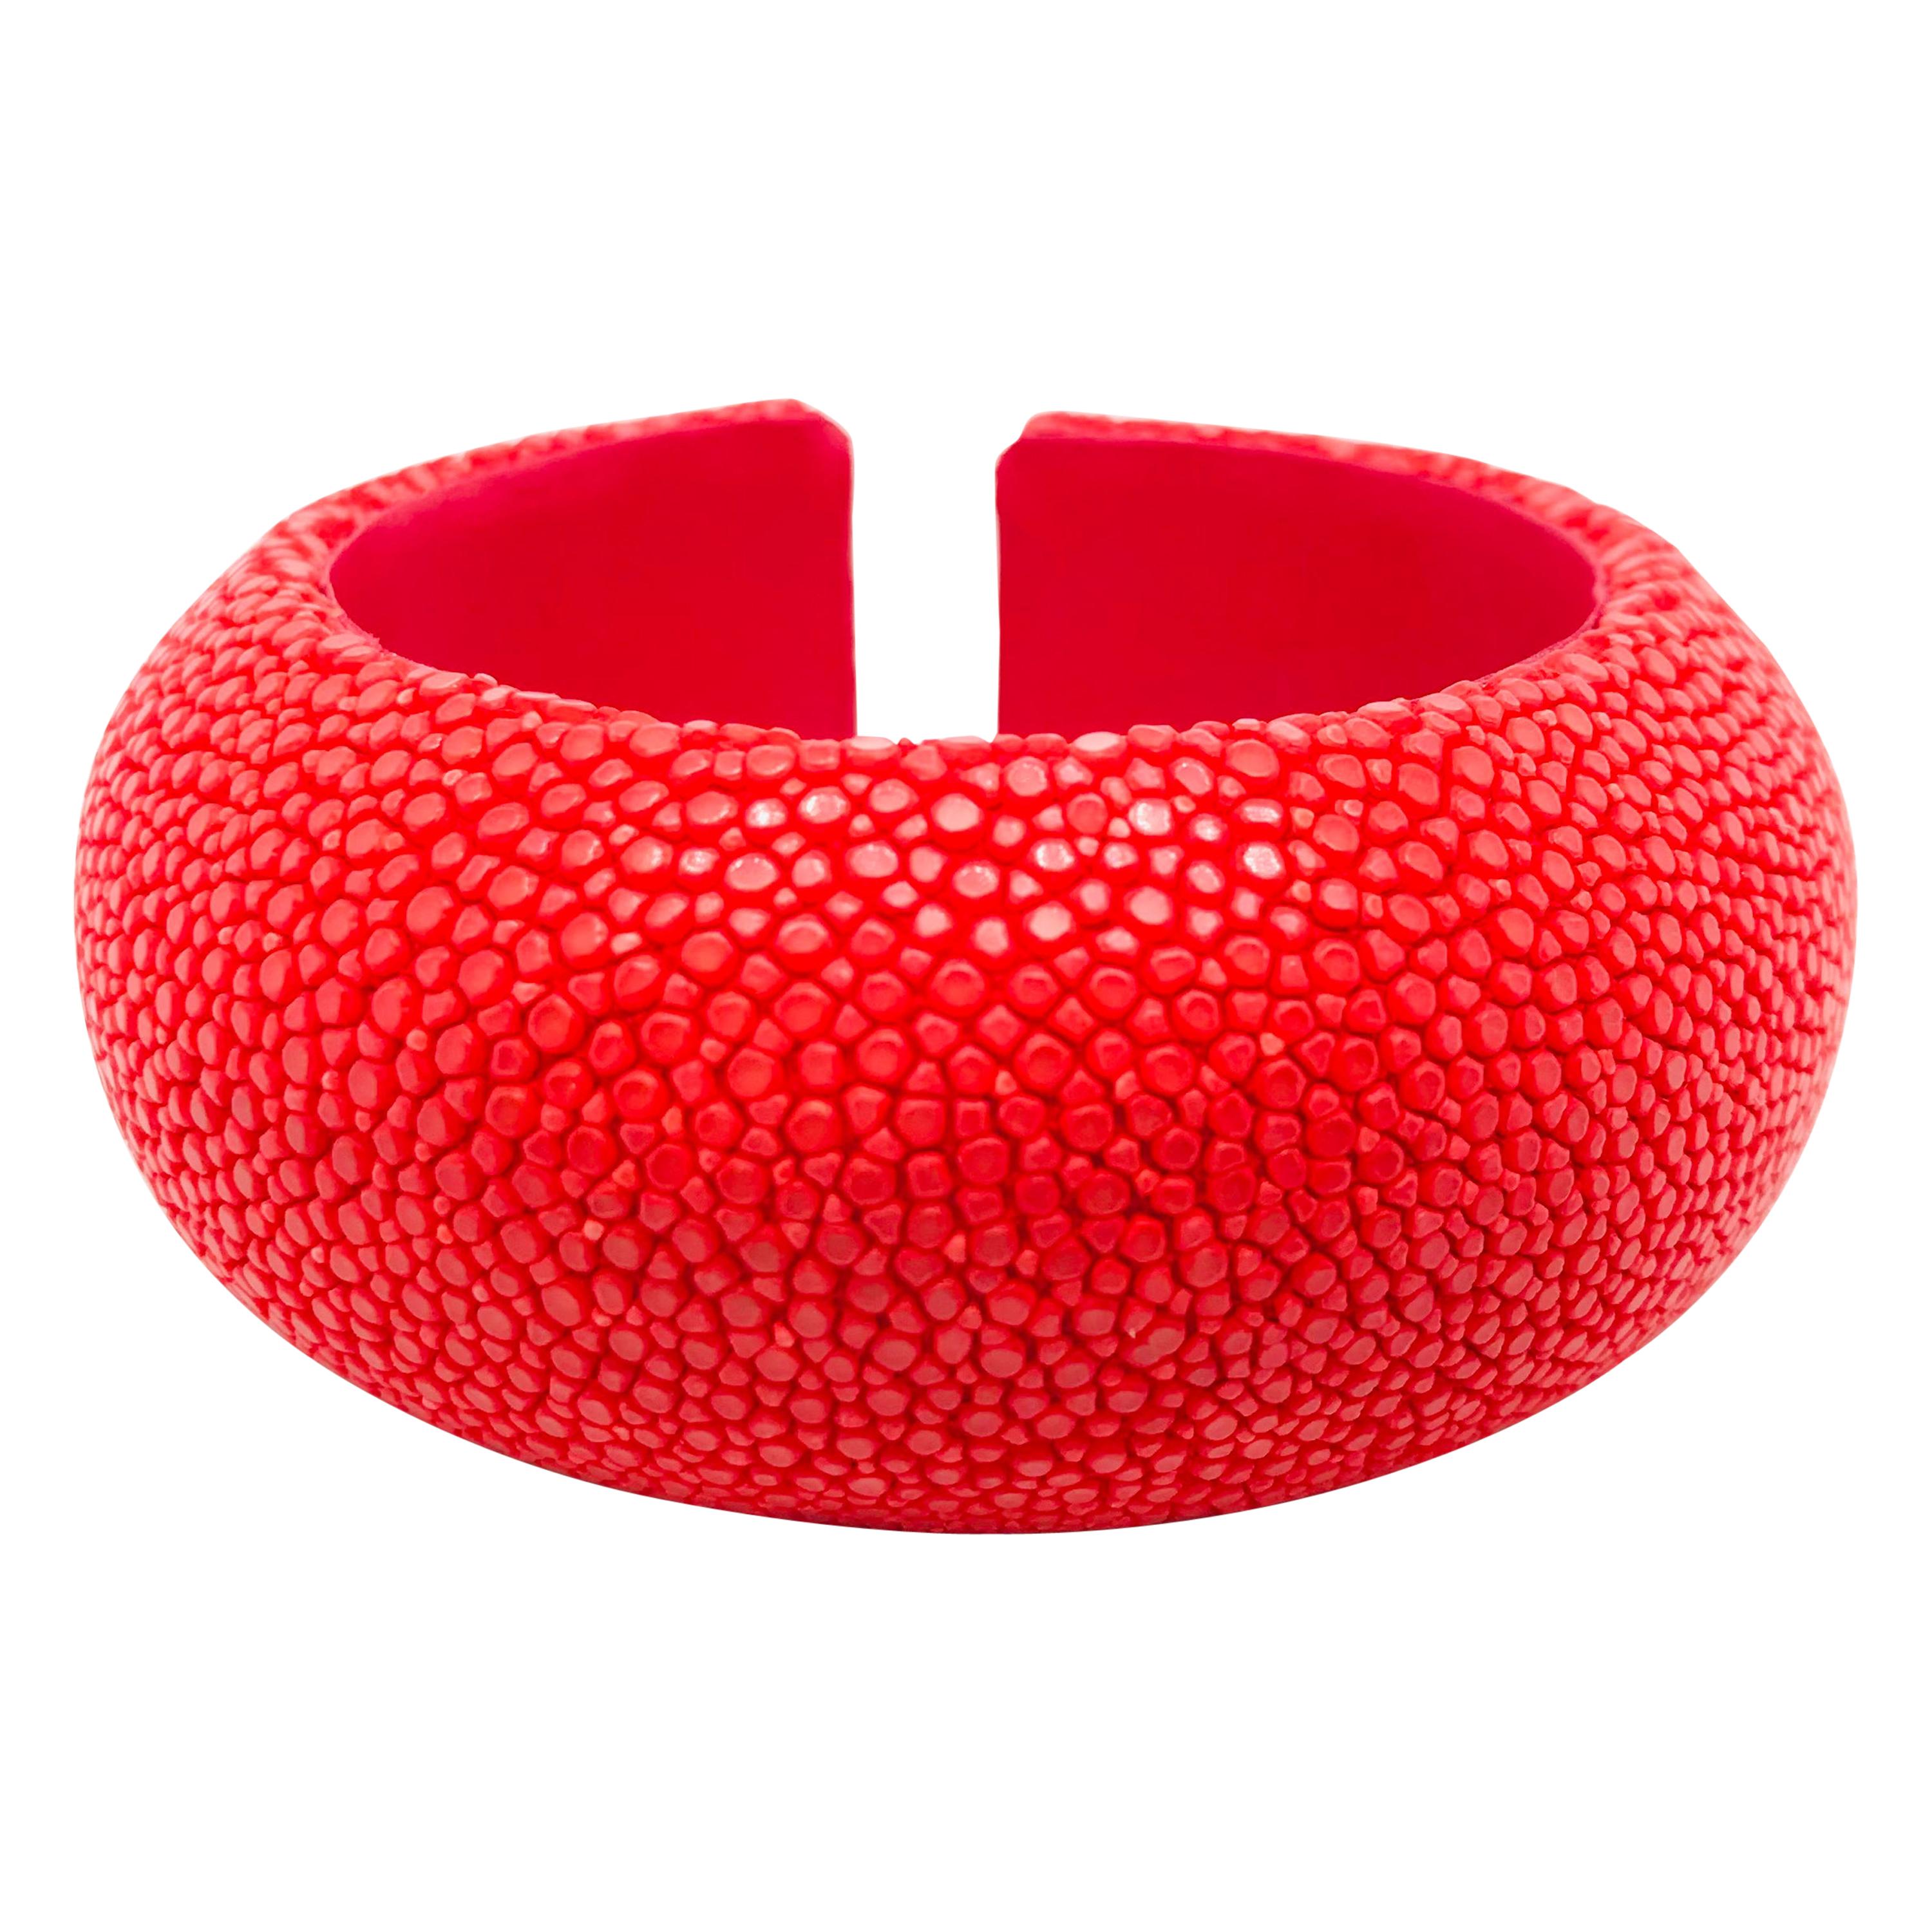 Red Galuchat Cuff Bracelet